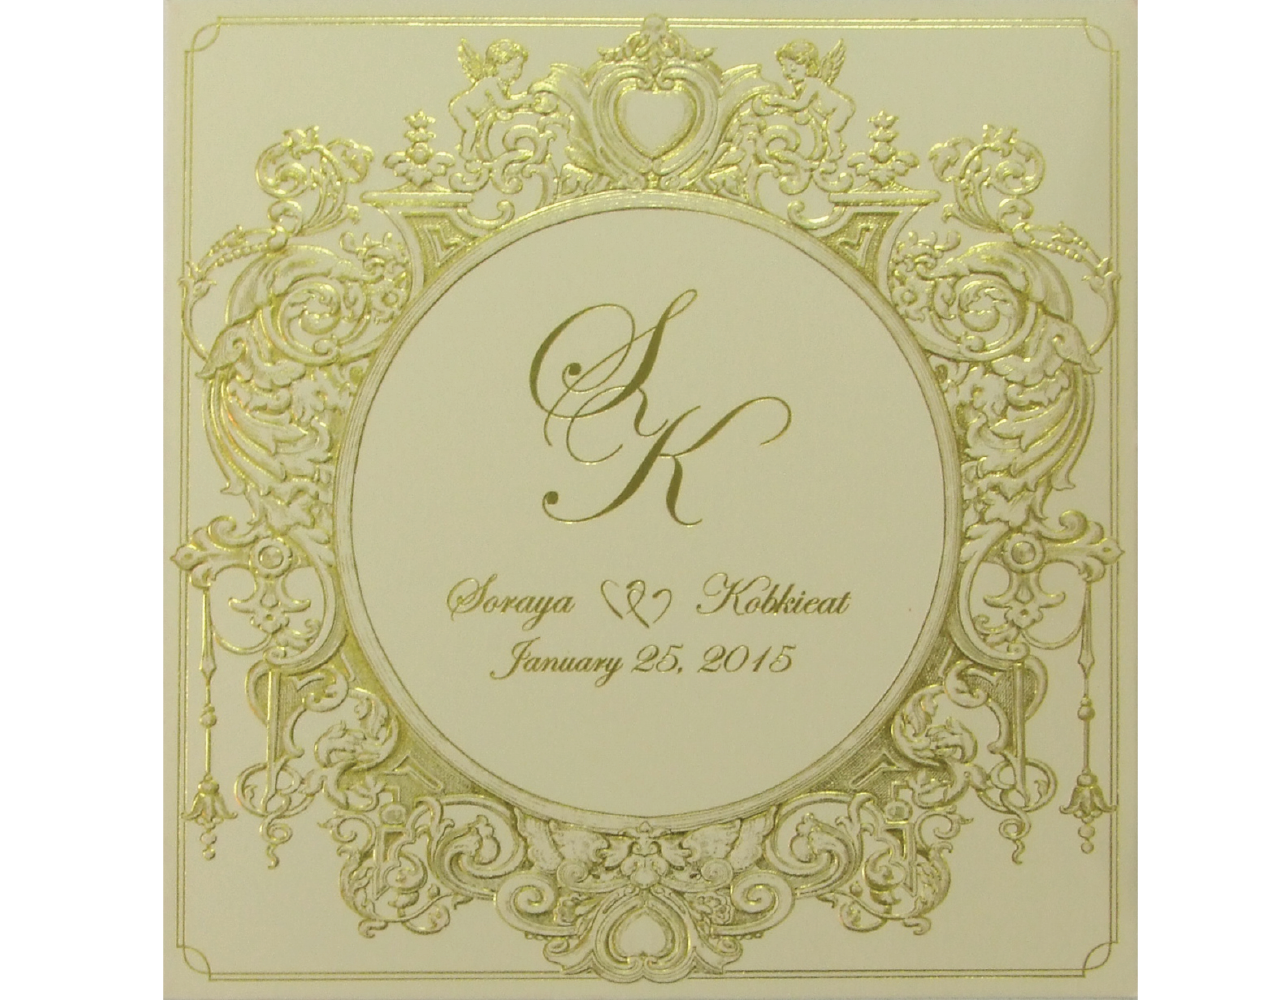 การ์ดแต่งงาน การ์ดเชิญ สีครีม พิมพ์ทอง ปั๊มนูน by Grace Greeting Wedding 16.2 x 16.5 cm SP 5814 Cream